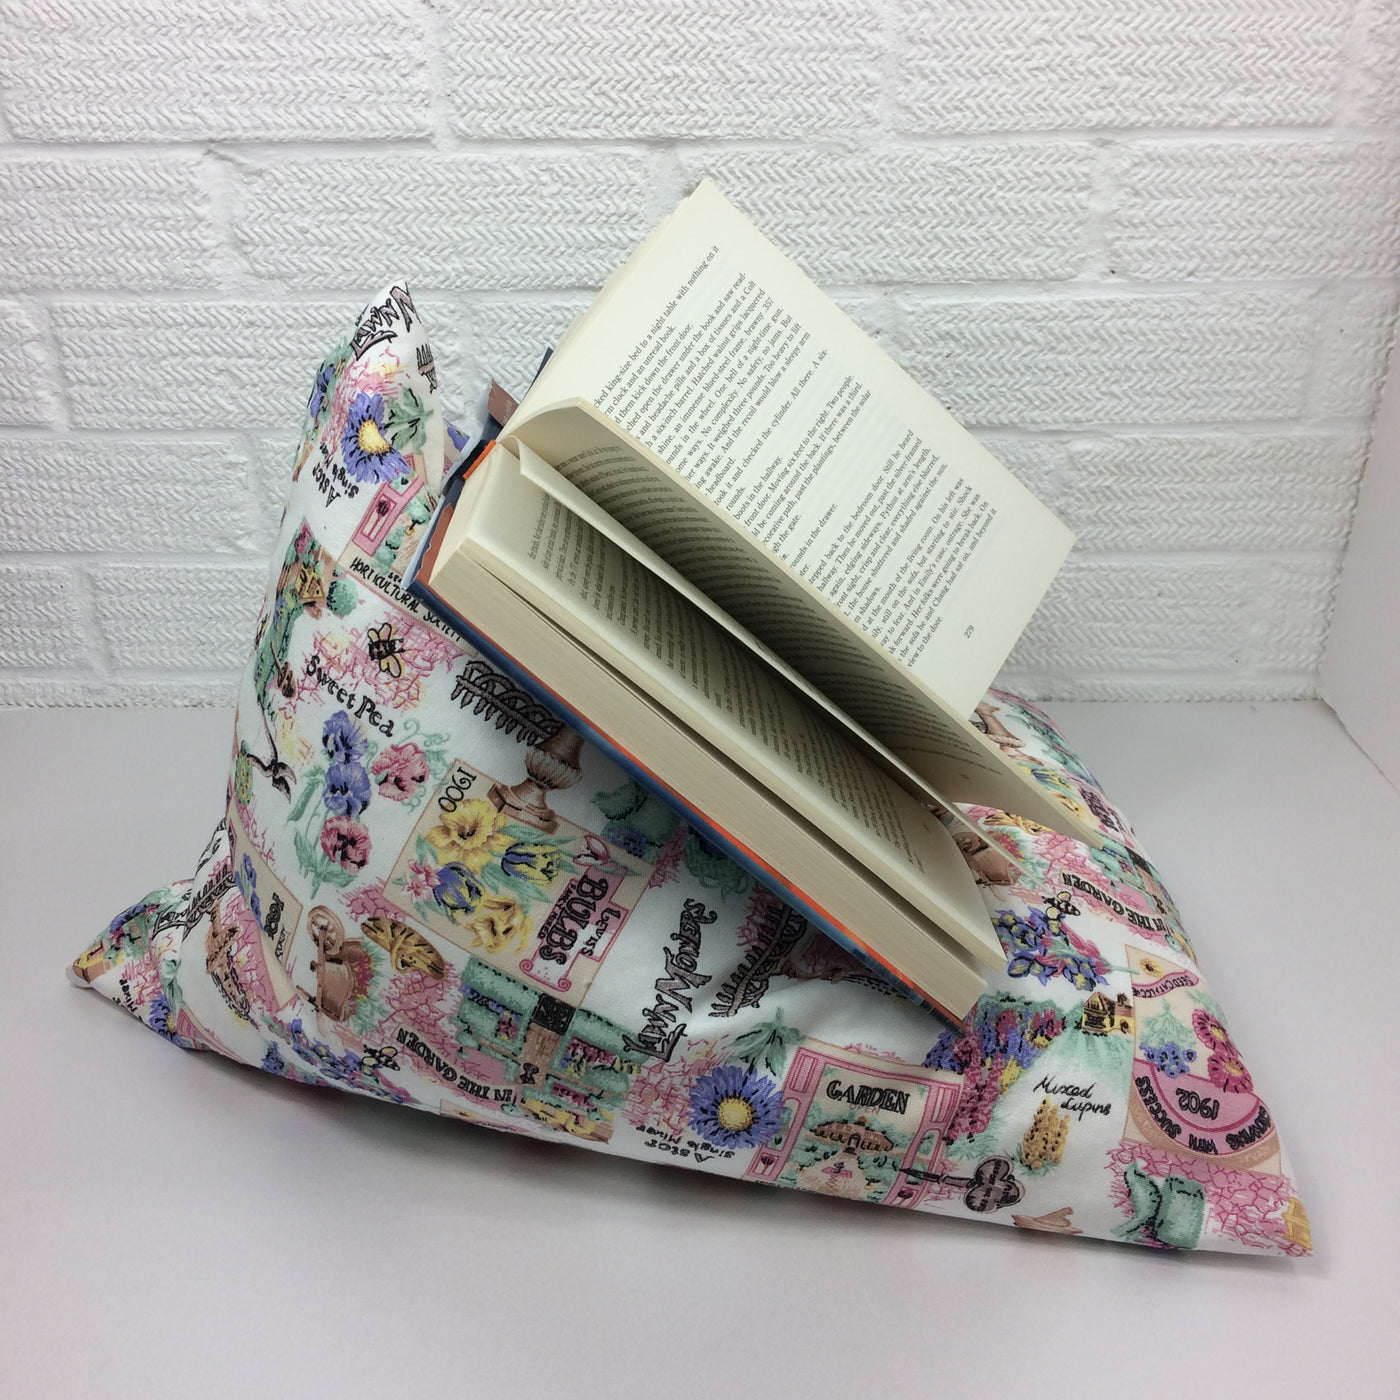 Pink Gardening Theme Book Holder Bean Bag